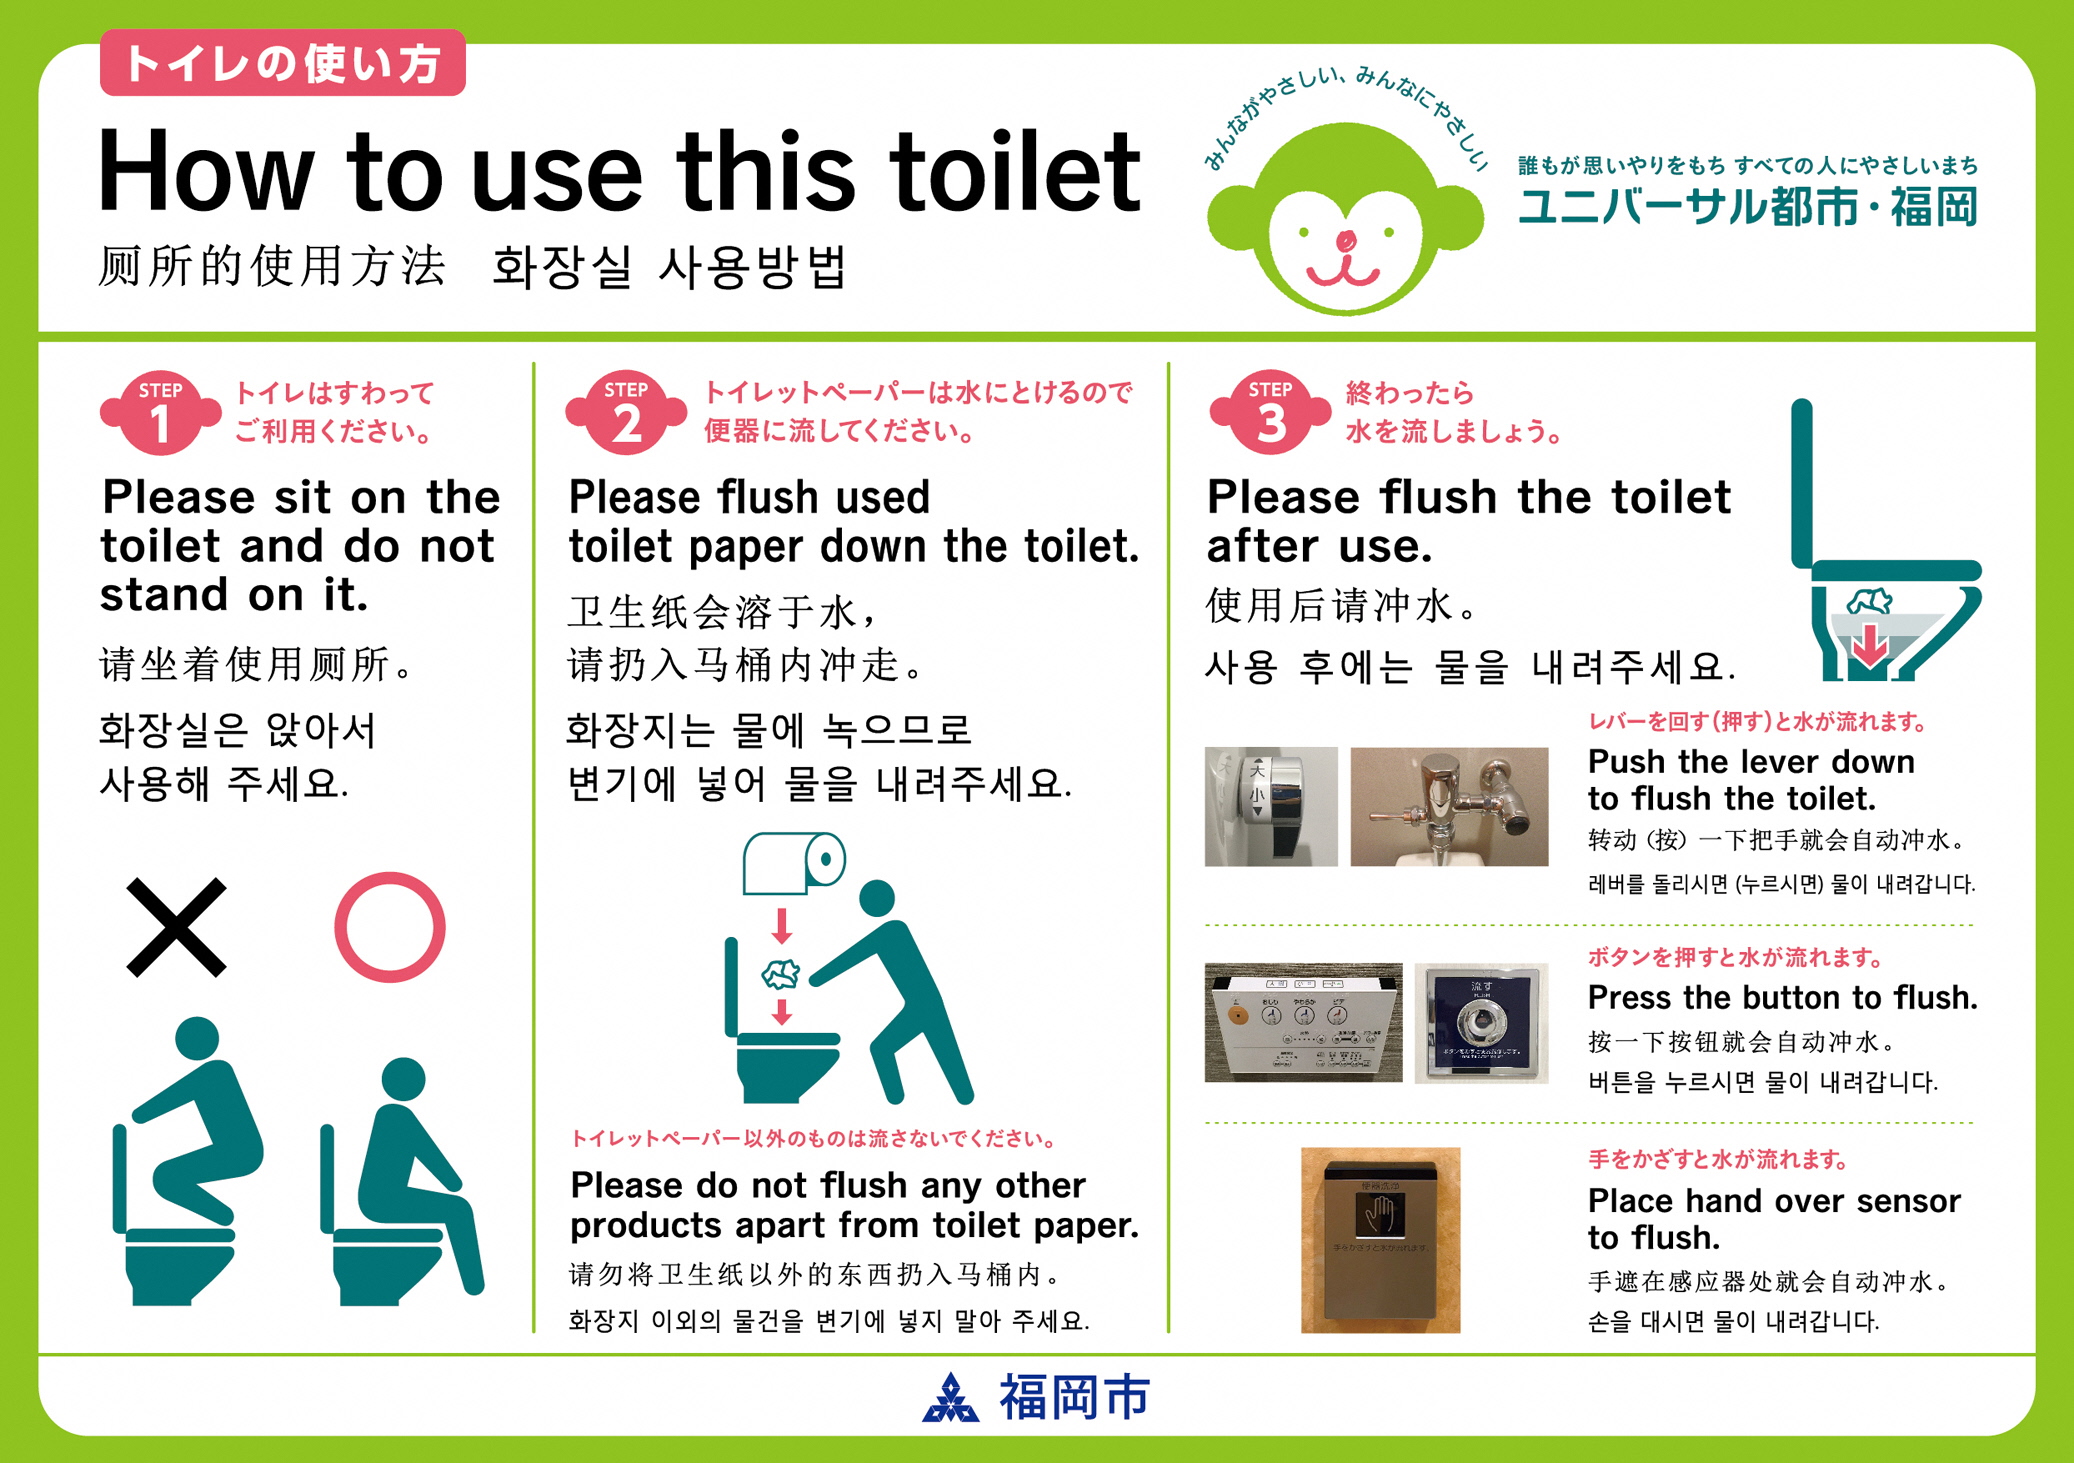 福岡市 ユニバーサル都市 福岡 トイレの利用マナー啓発ステッカーについて